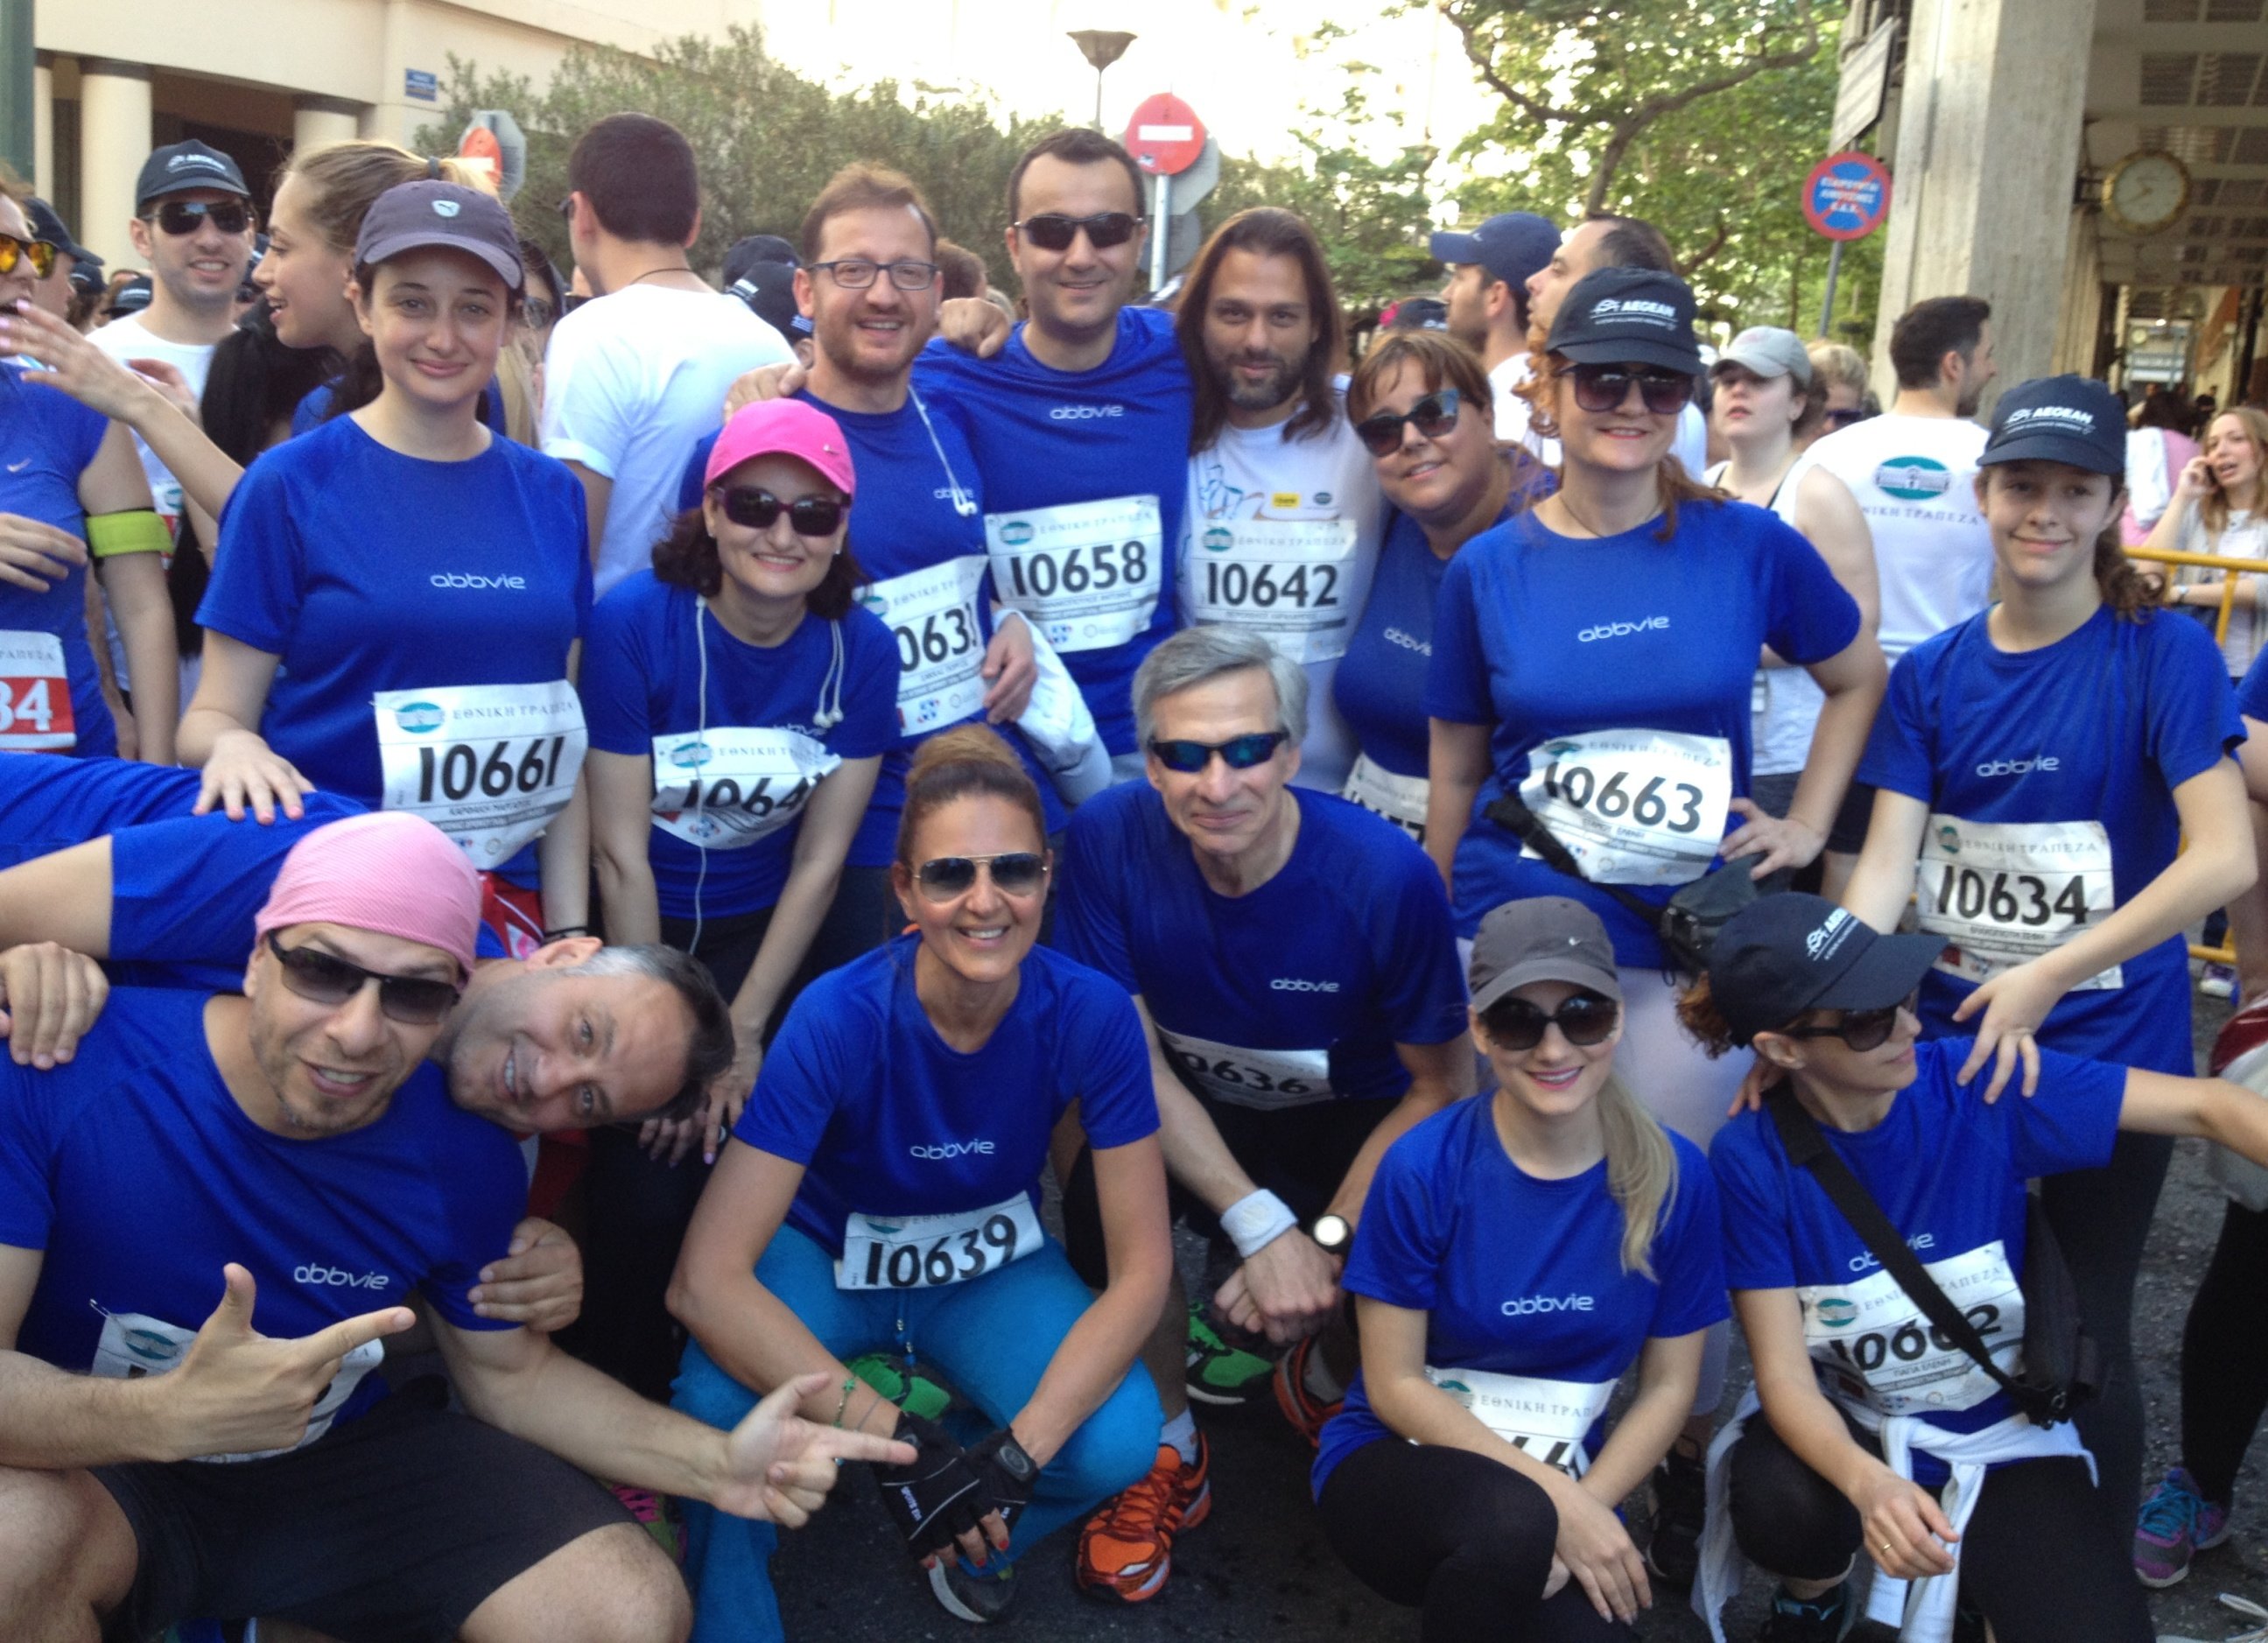 Η AbbVie Running Team έτρεξε για την Ομάδα Αιγαίου  στον Ημιμαραθώνιο της Αθήνας